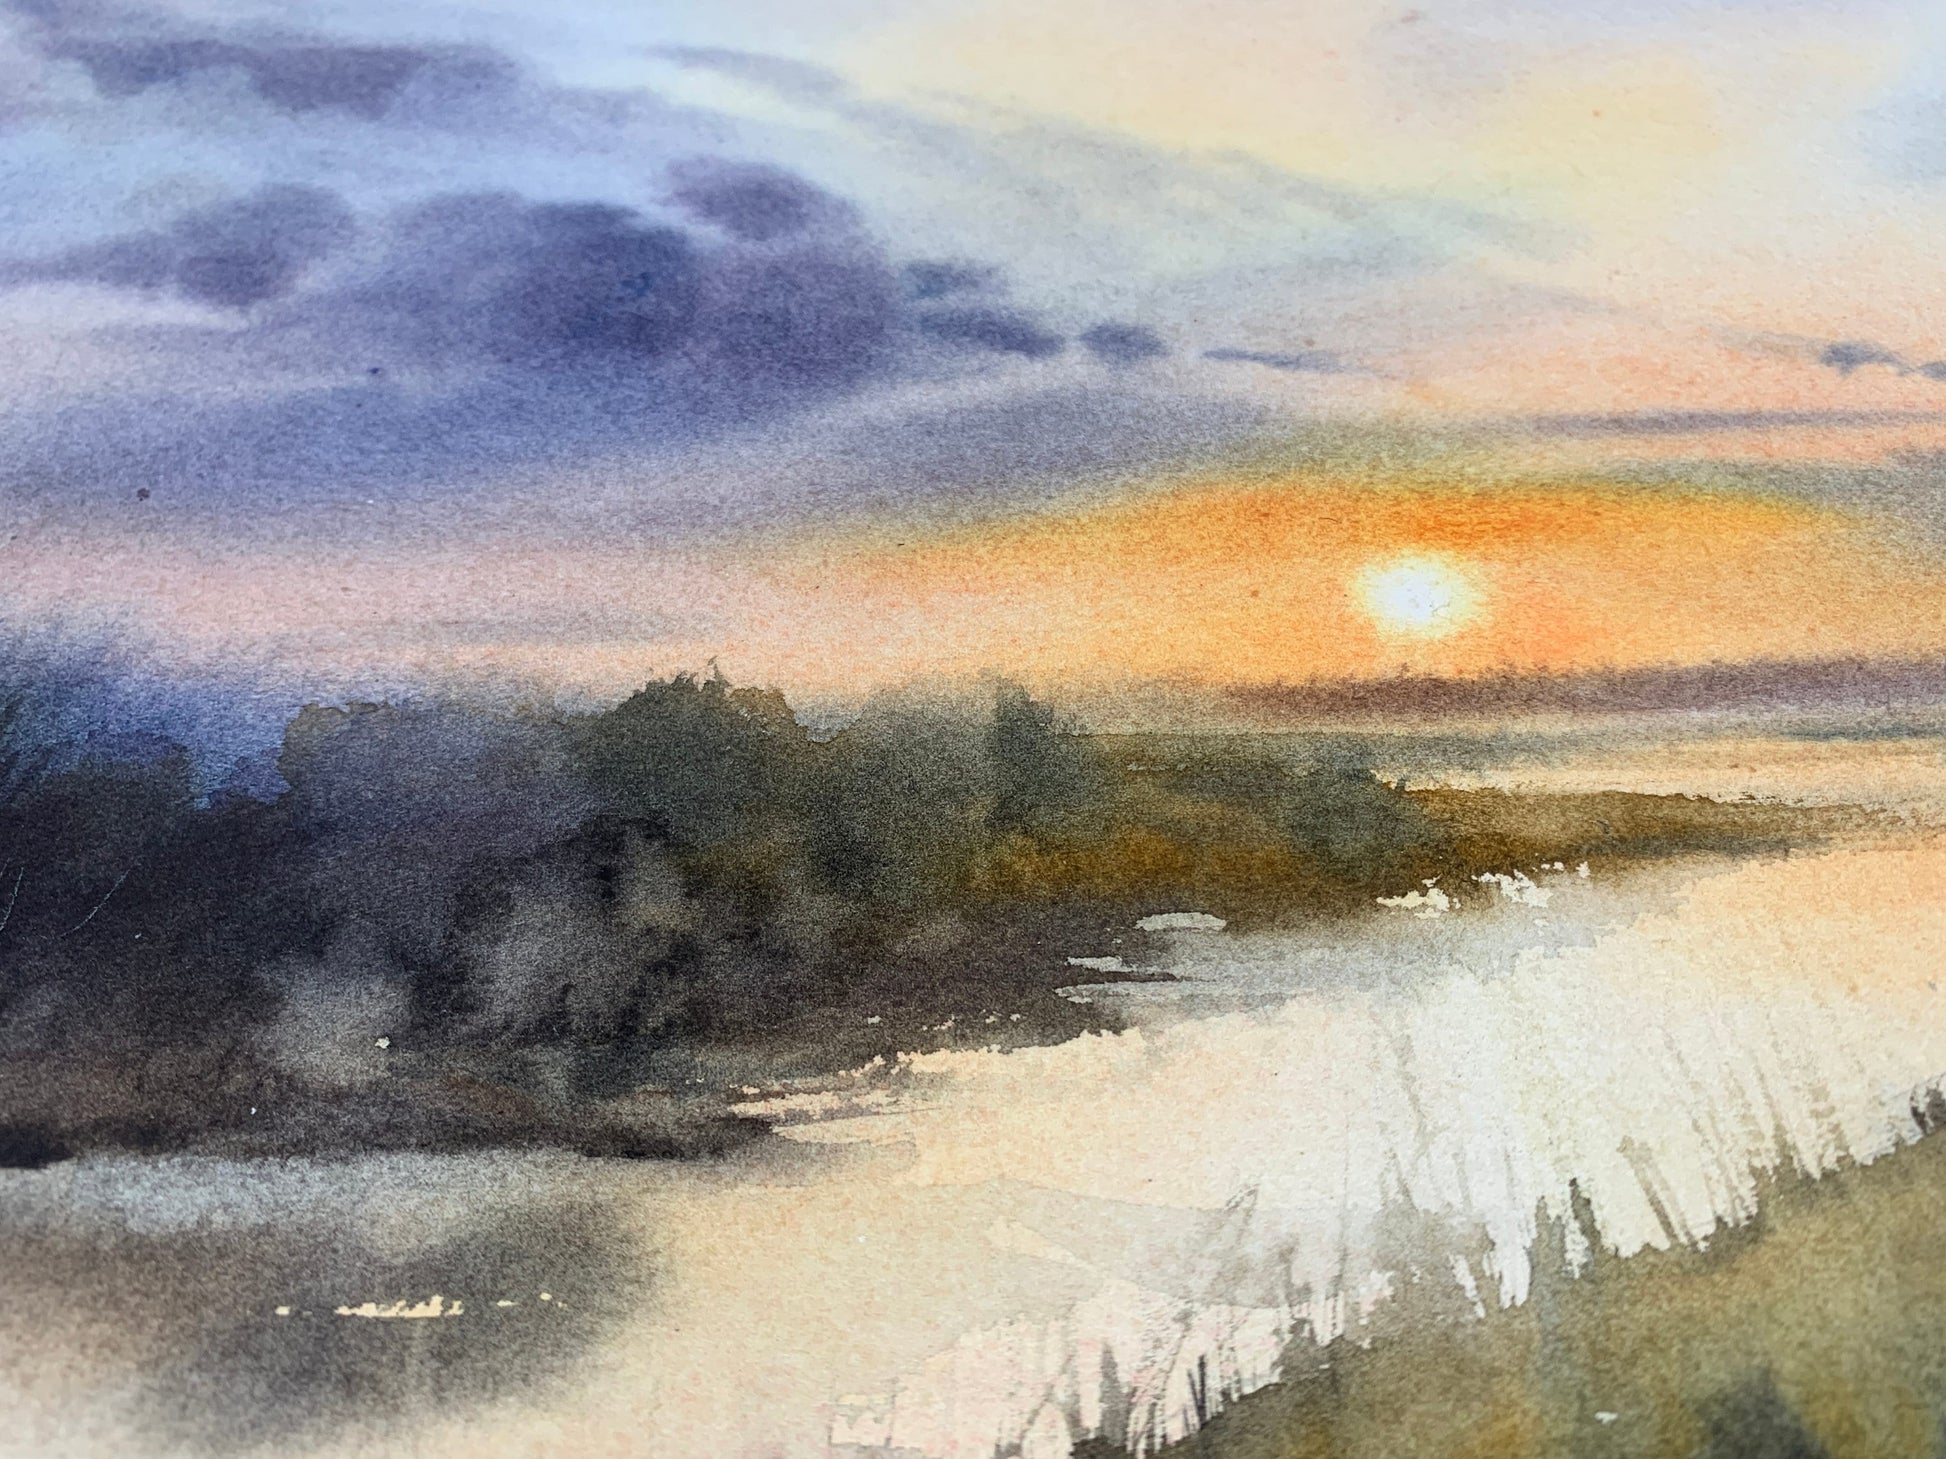 watercolor landscape sunset